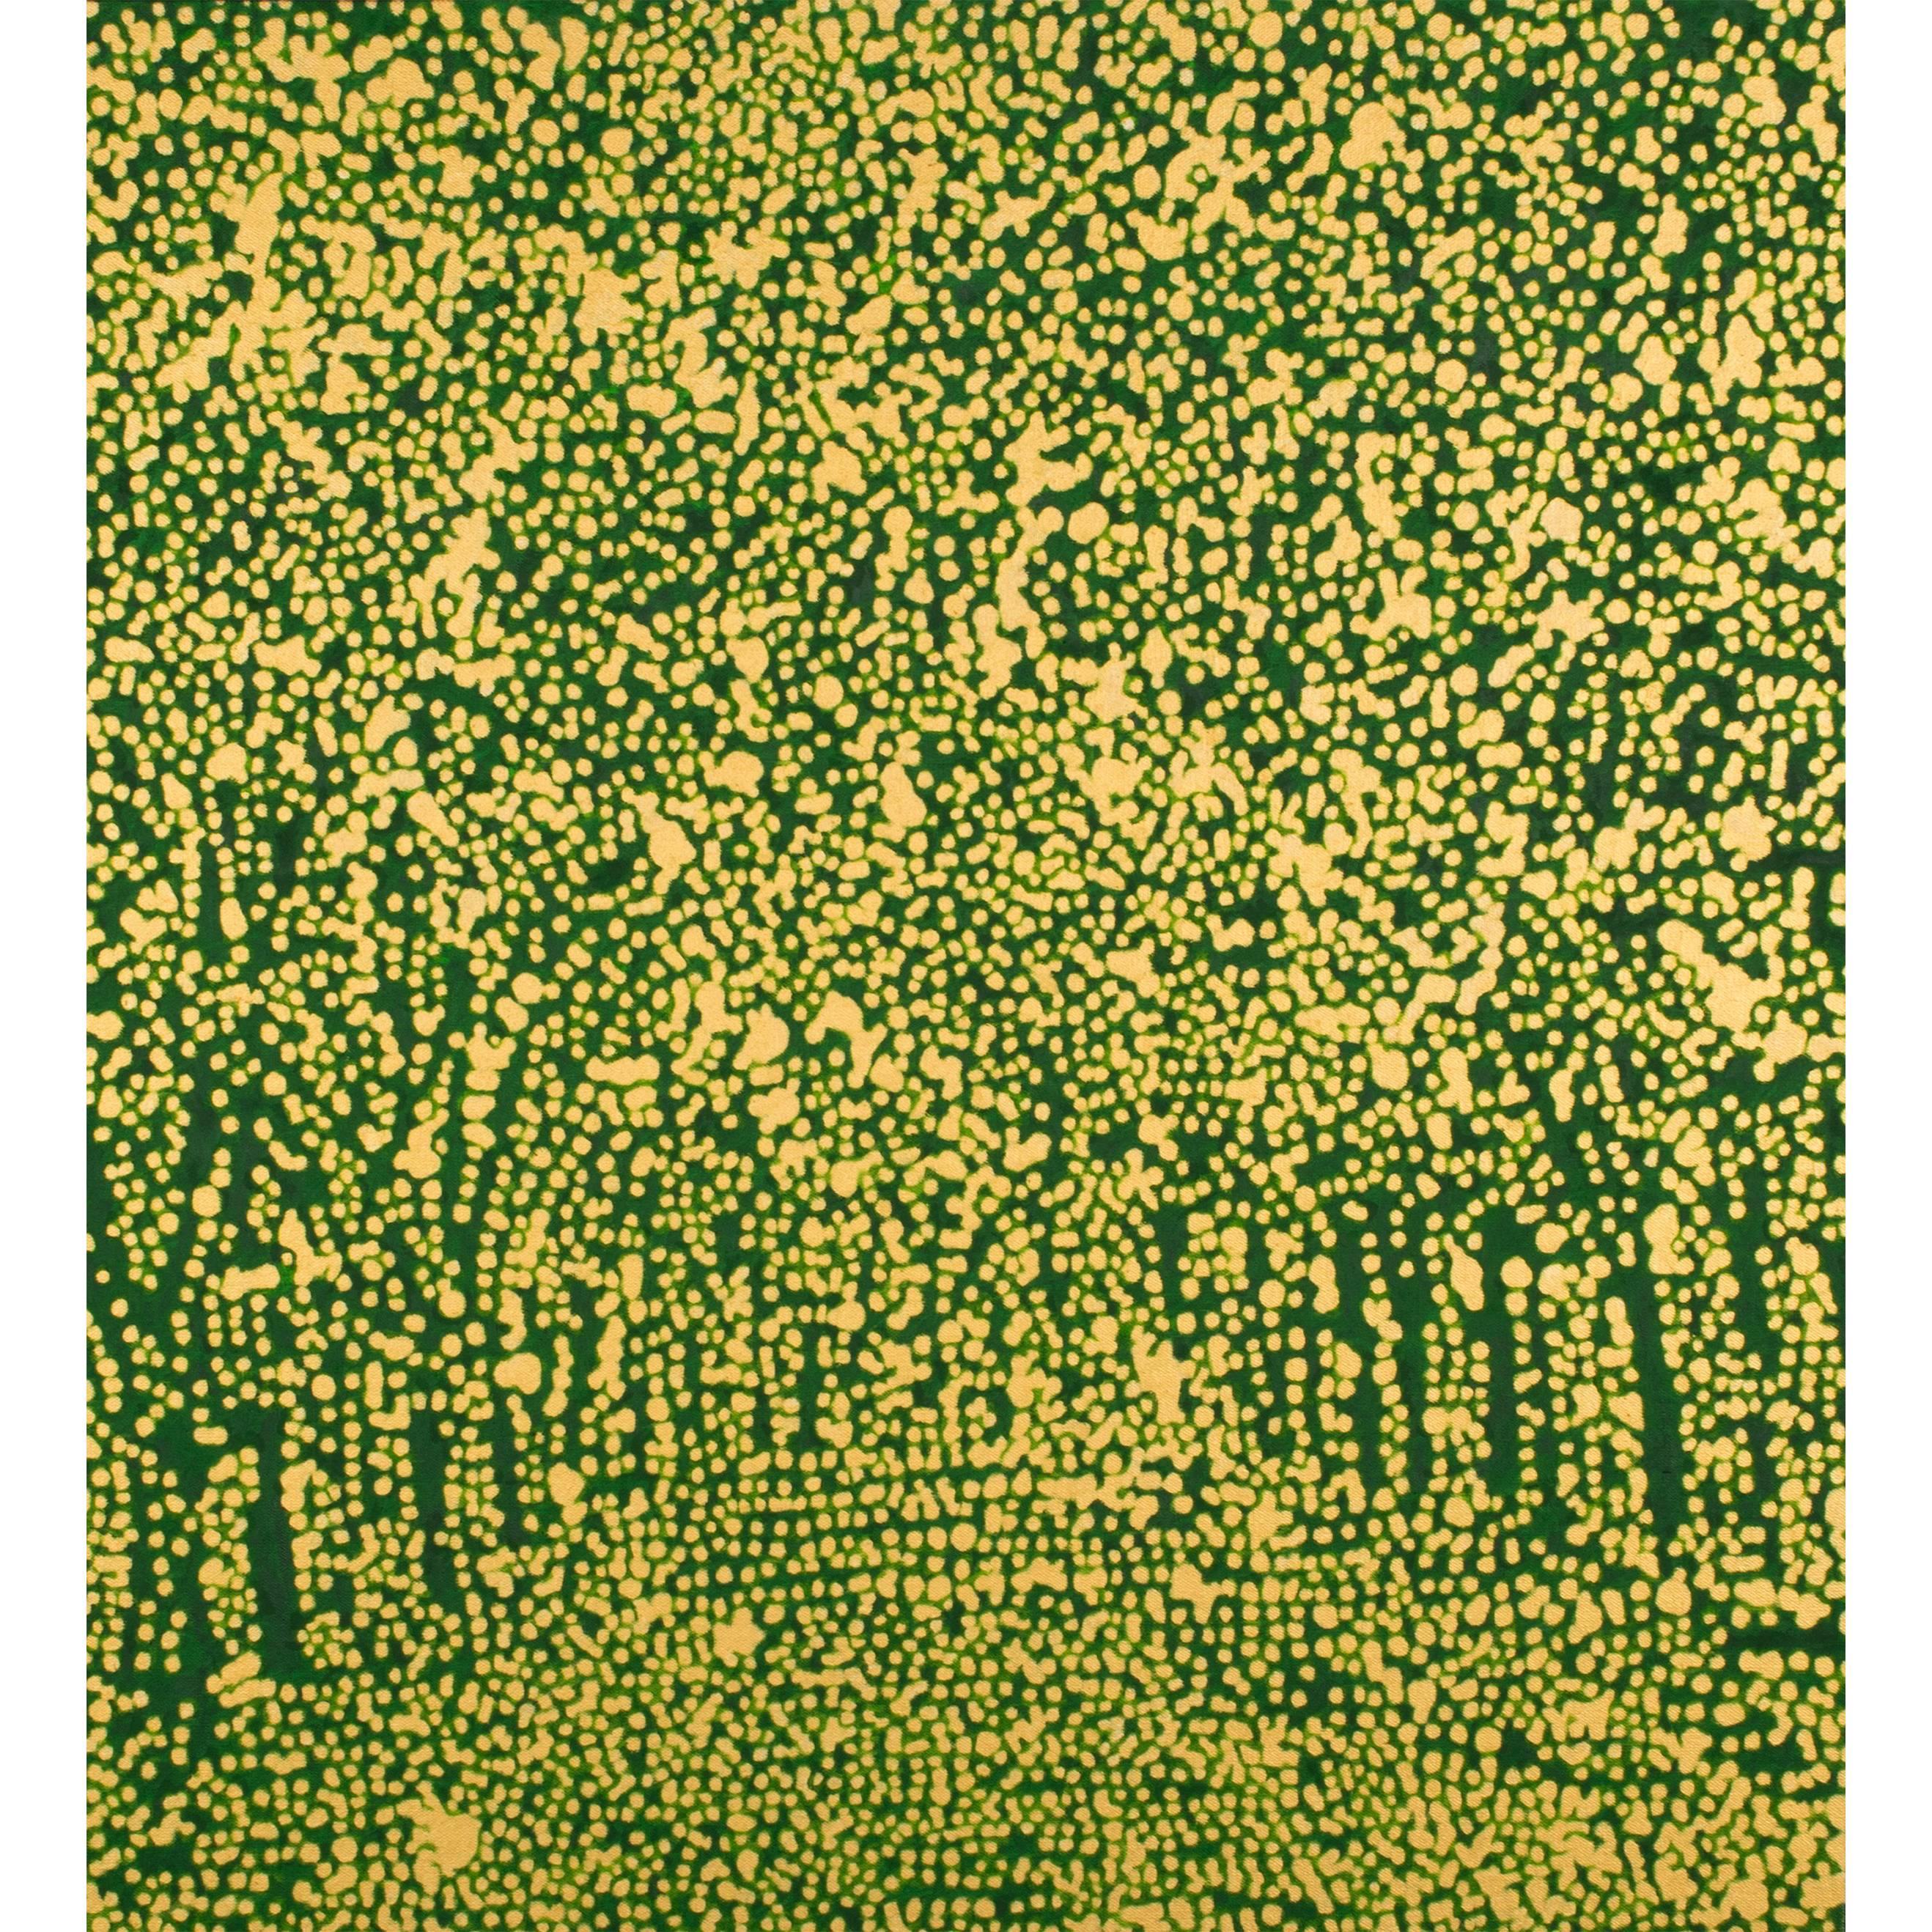 "Green Path/Boulevard" by Ren Hui